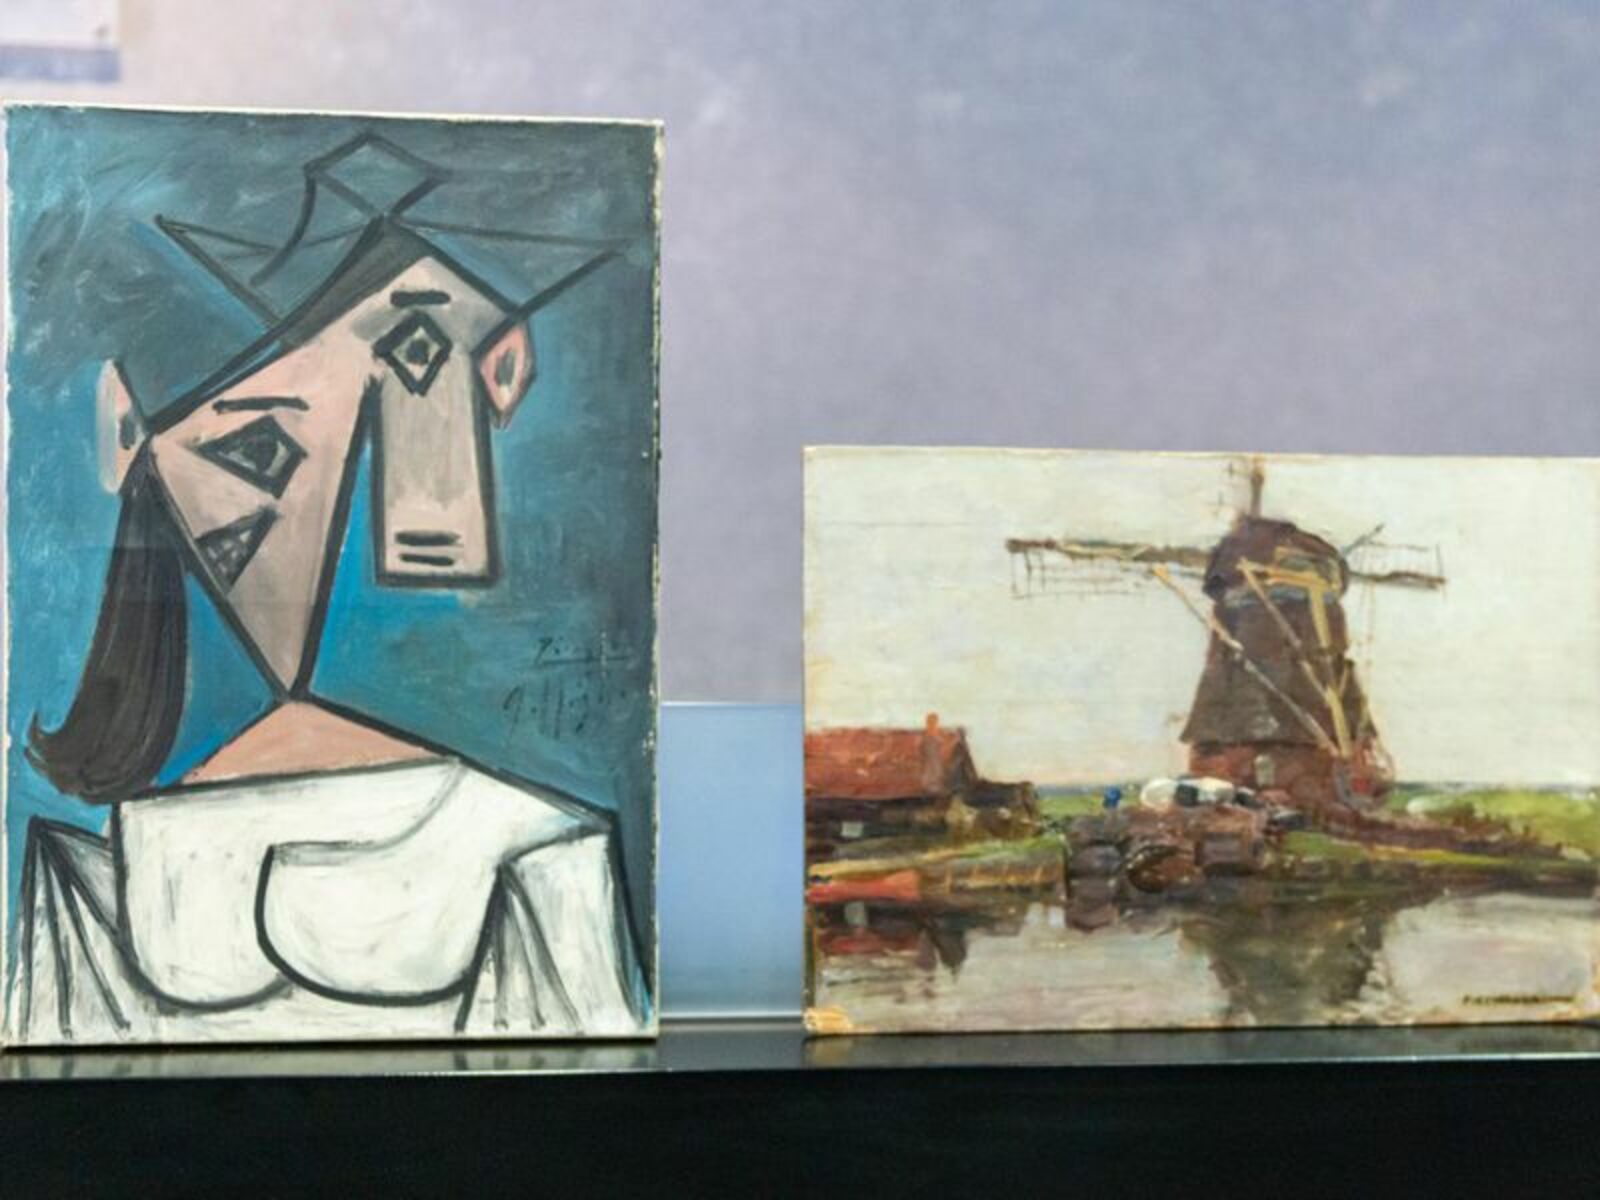 Грек, укравший в 2012 году картины Пикассо и Мондриана, рассказал, что сделал это только из любви к искусству